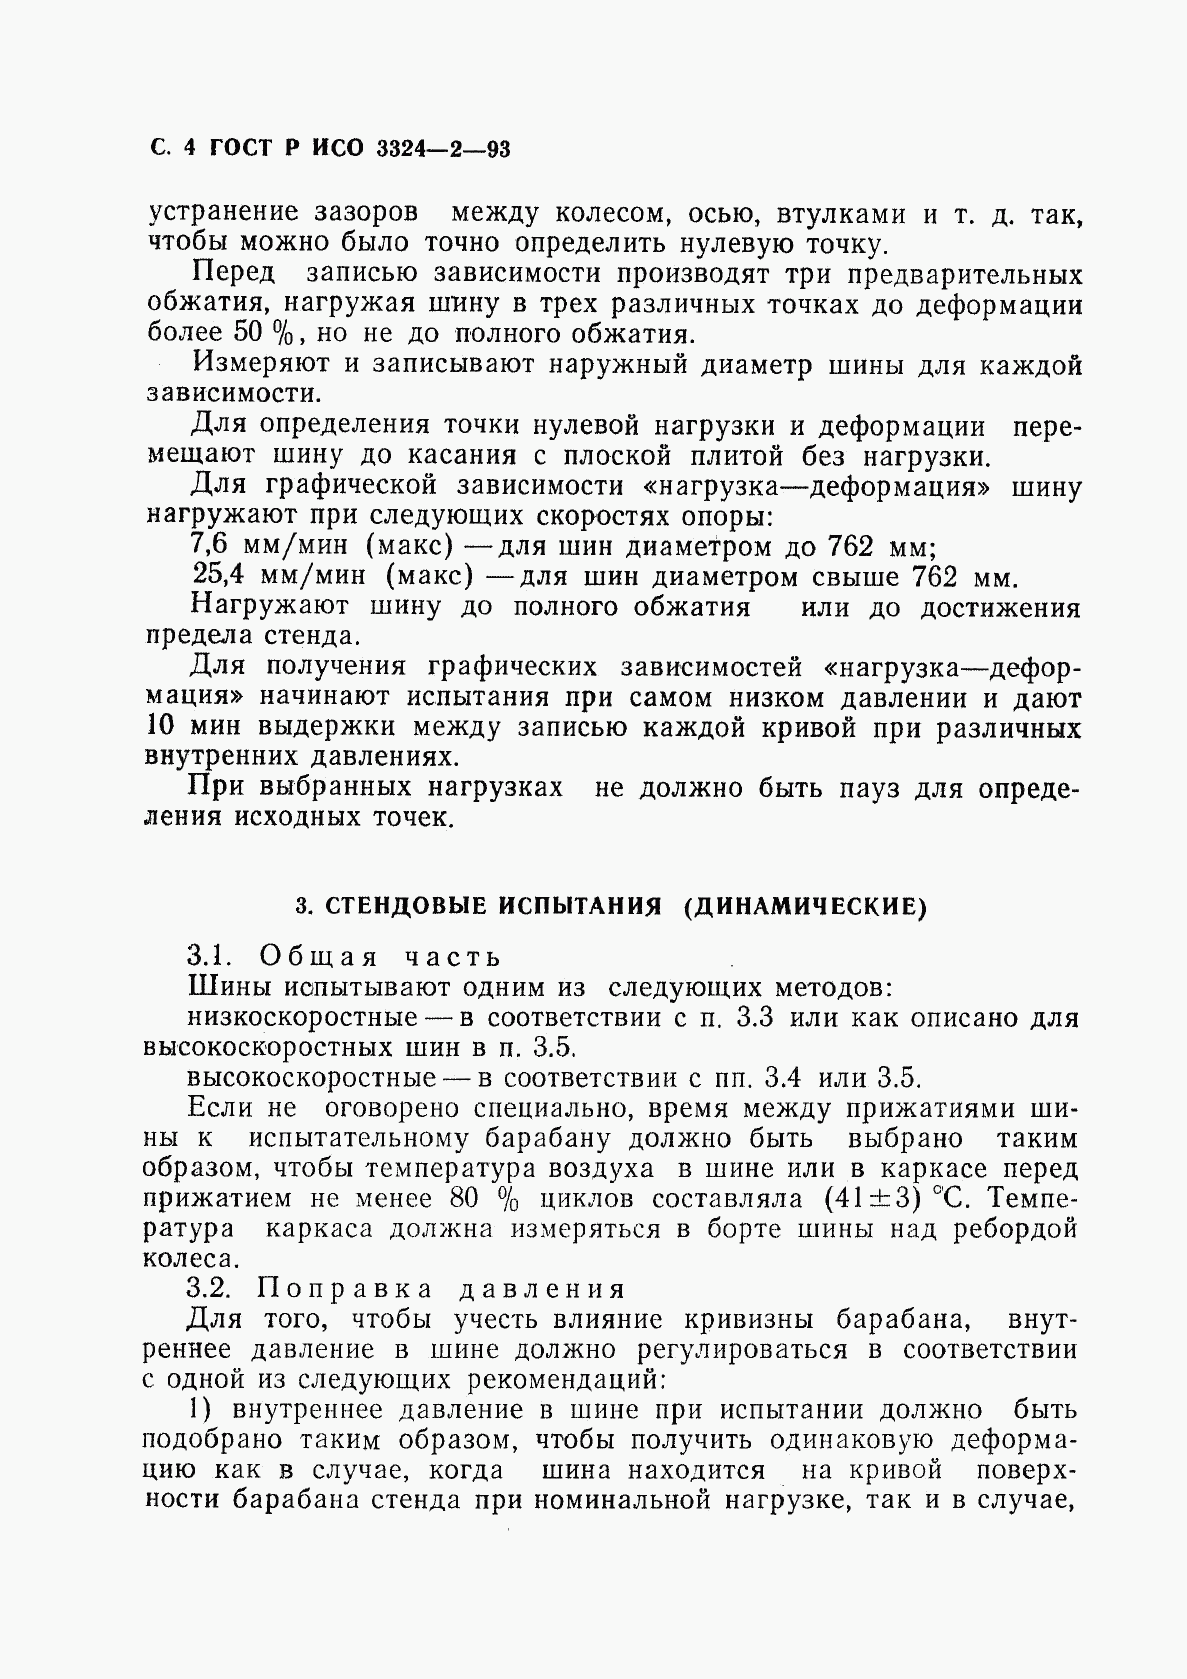 ГОСТ Р ИСО 3324-2-93, страница 5